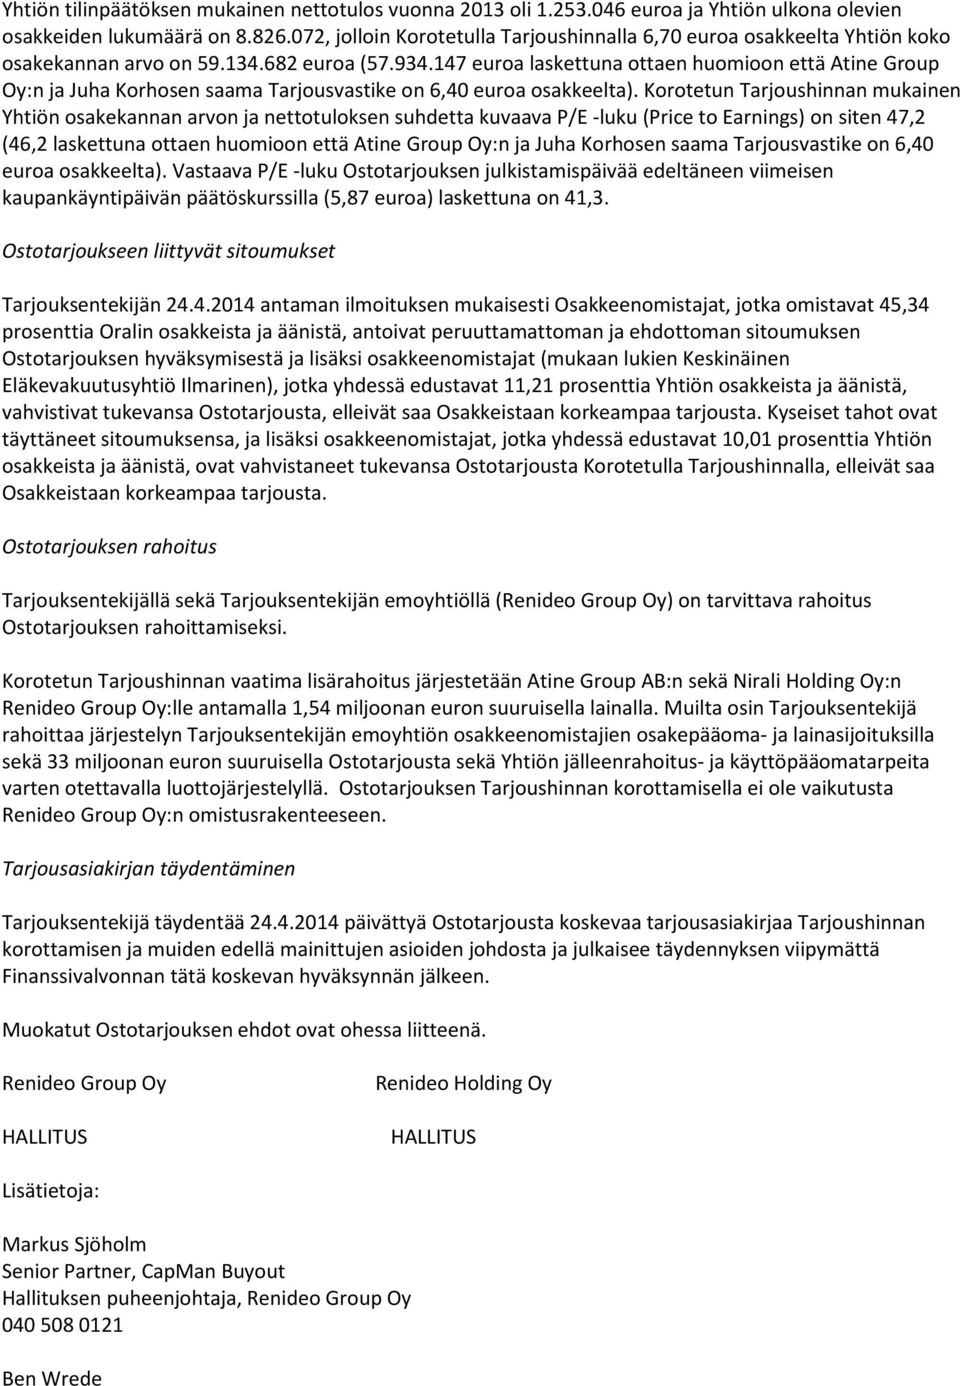 147 euroa laskettuna ottaen huomioon että Atine Group Oy:n ja Juha Korhosen saama Tarjousvastike on 6,40 euroa osakkeelta).